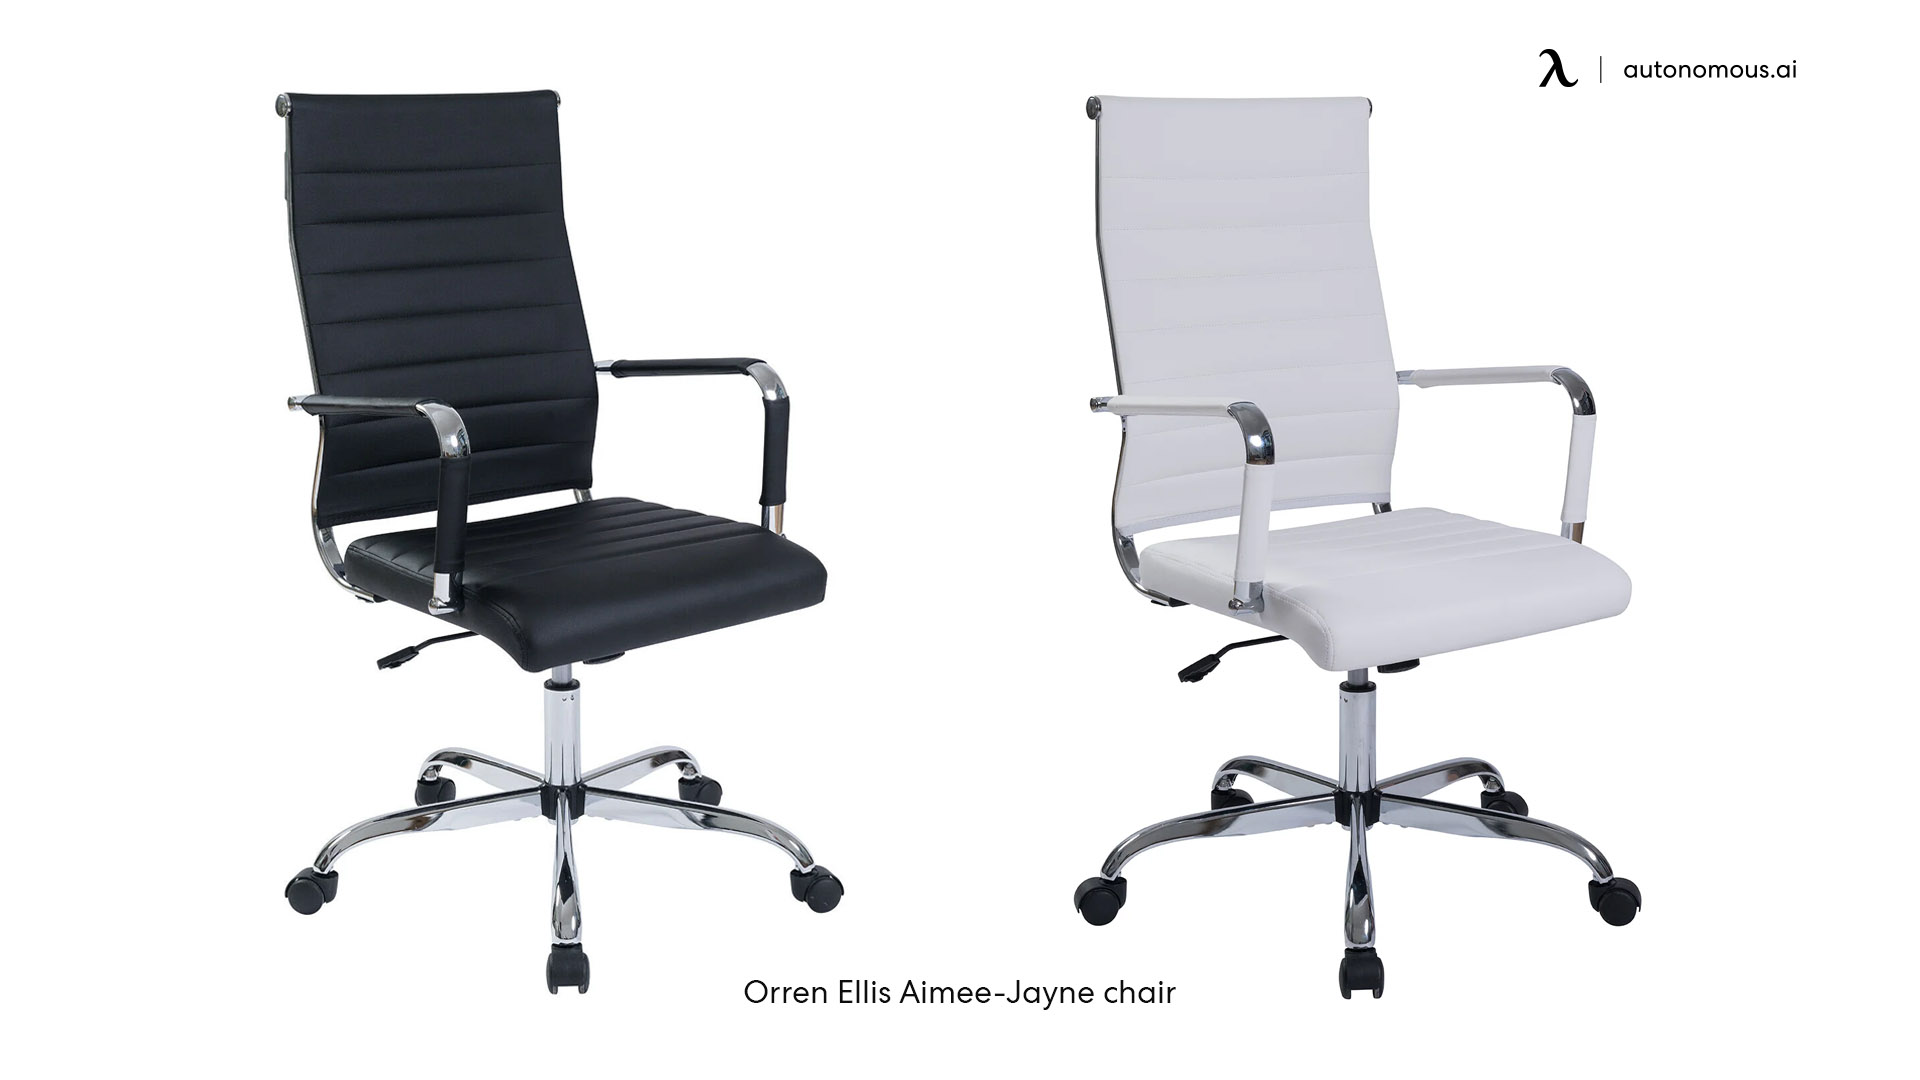 Orren Ellis Aimee-Jayne Chair